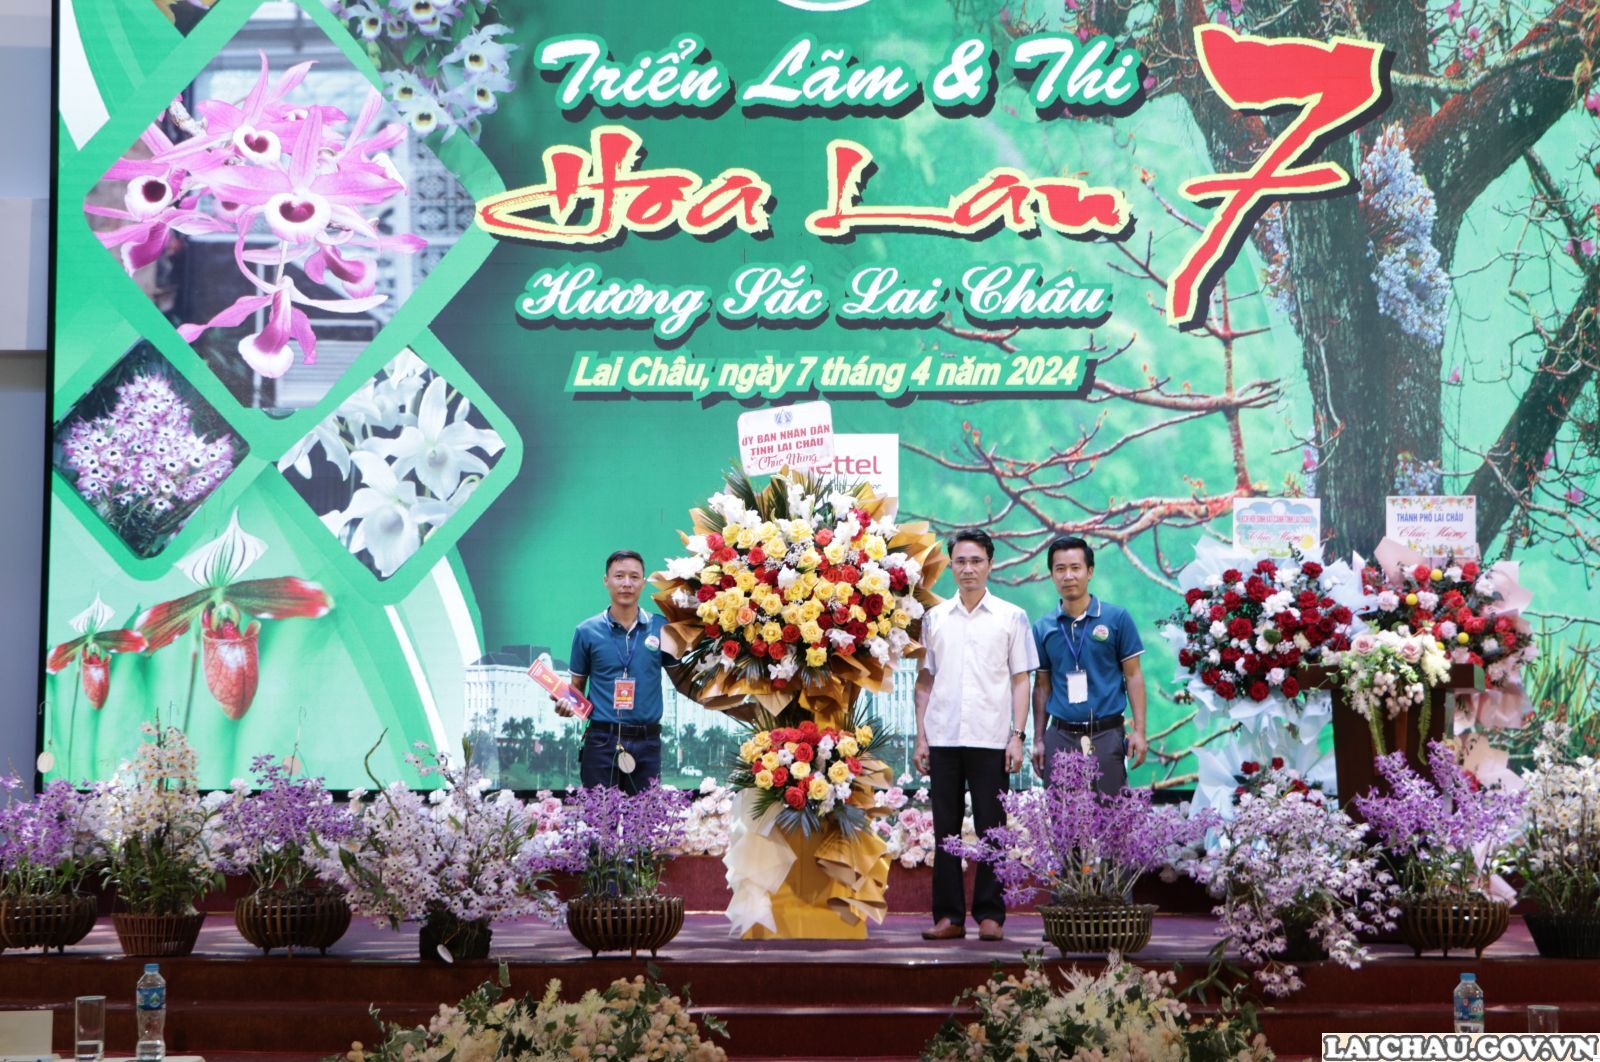 Triển lãm và thi hoa lan "Hương sắc Lai Châu" lần thứ 7: Góp phần quảng bá, xúc tiến du lịch của tỉnh